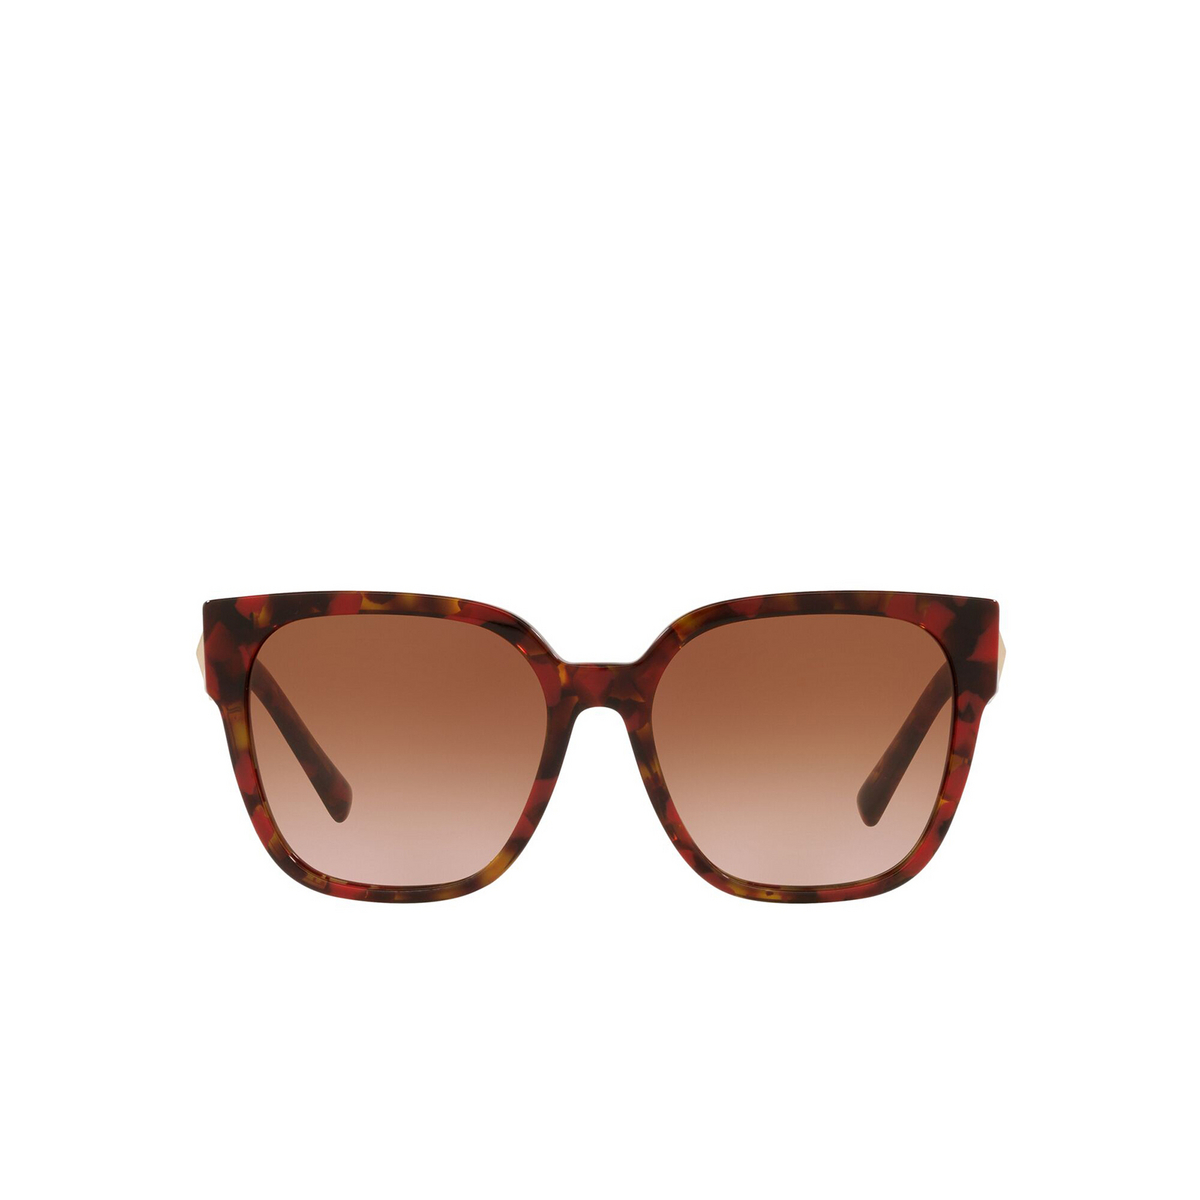 Valentino® Square Sunglasses: VA4111 color Red Havana 519413 - front view.